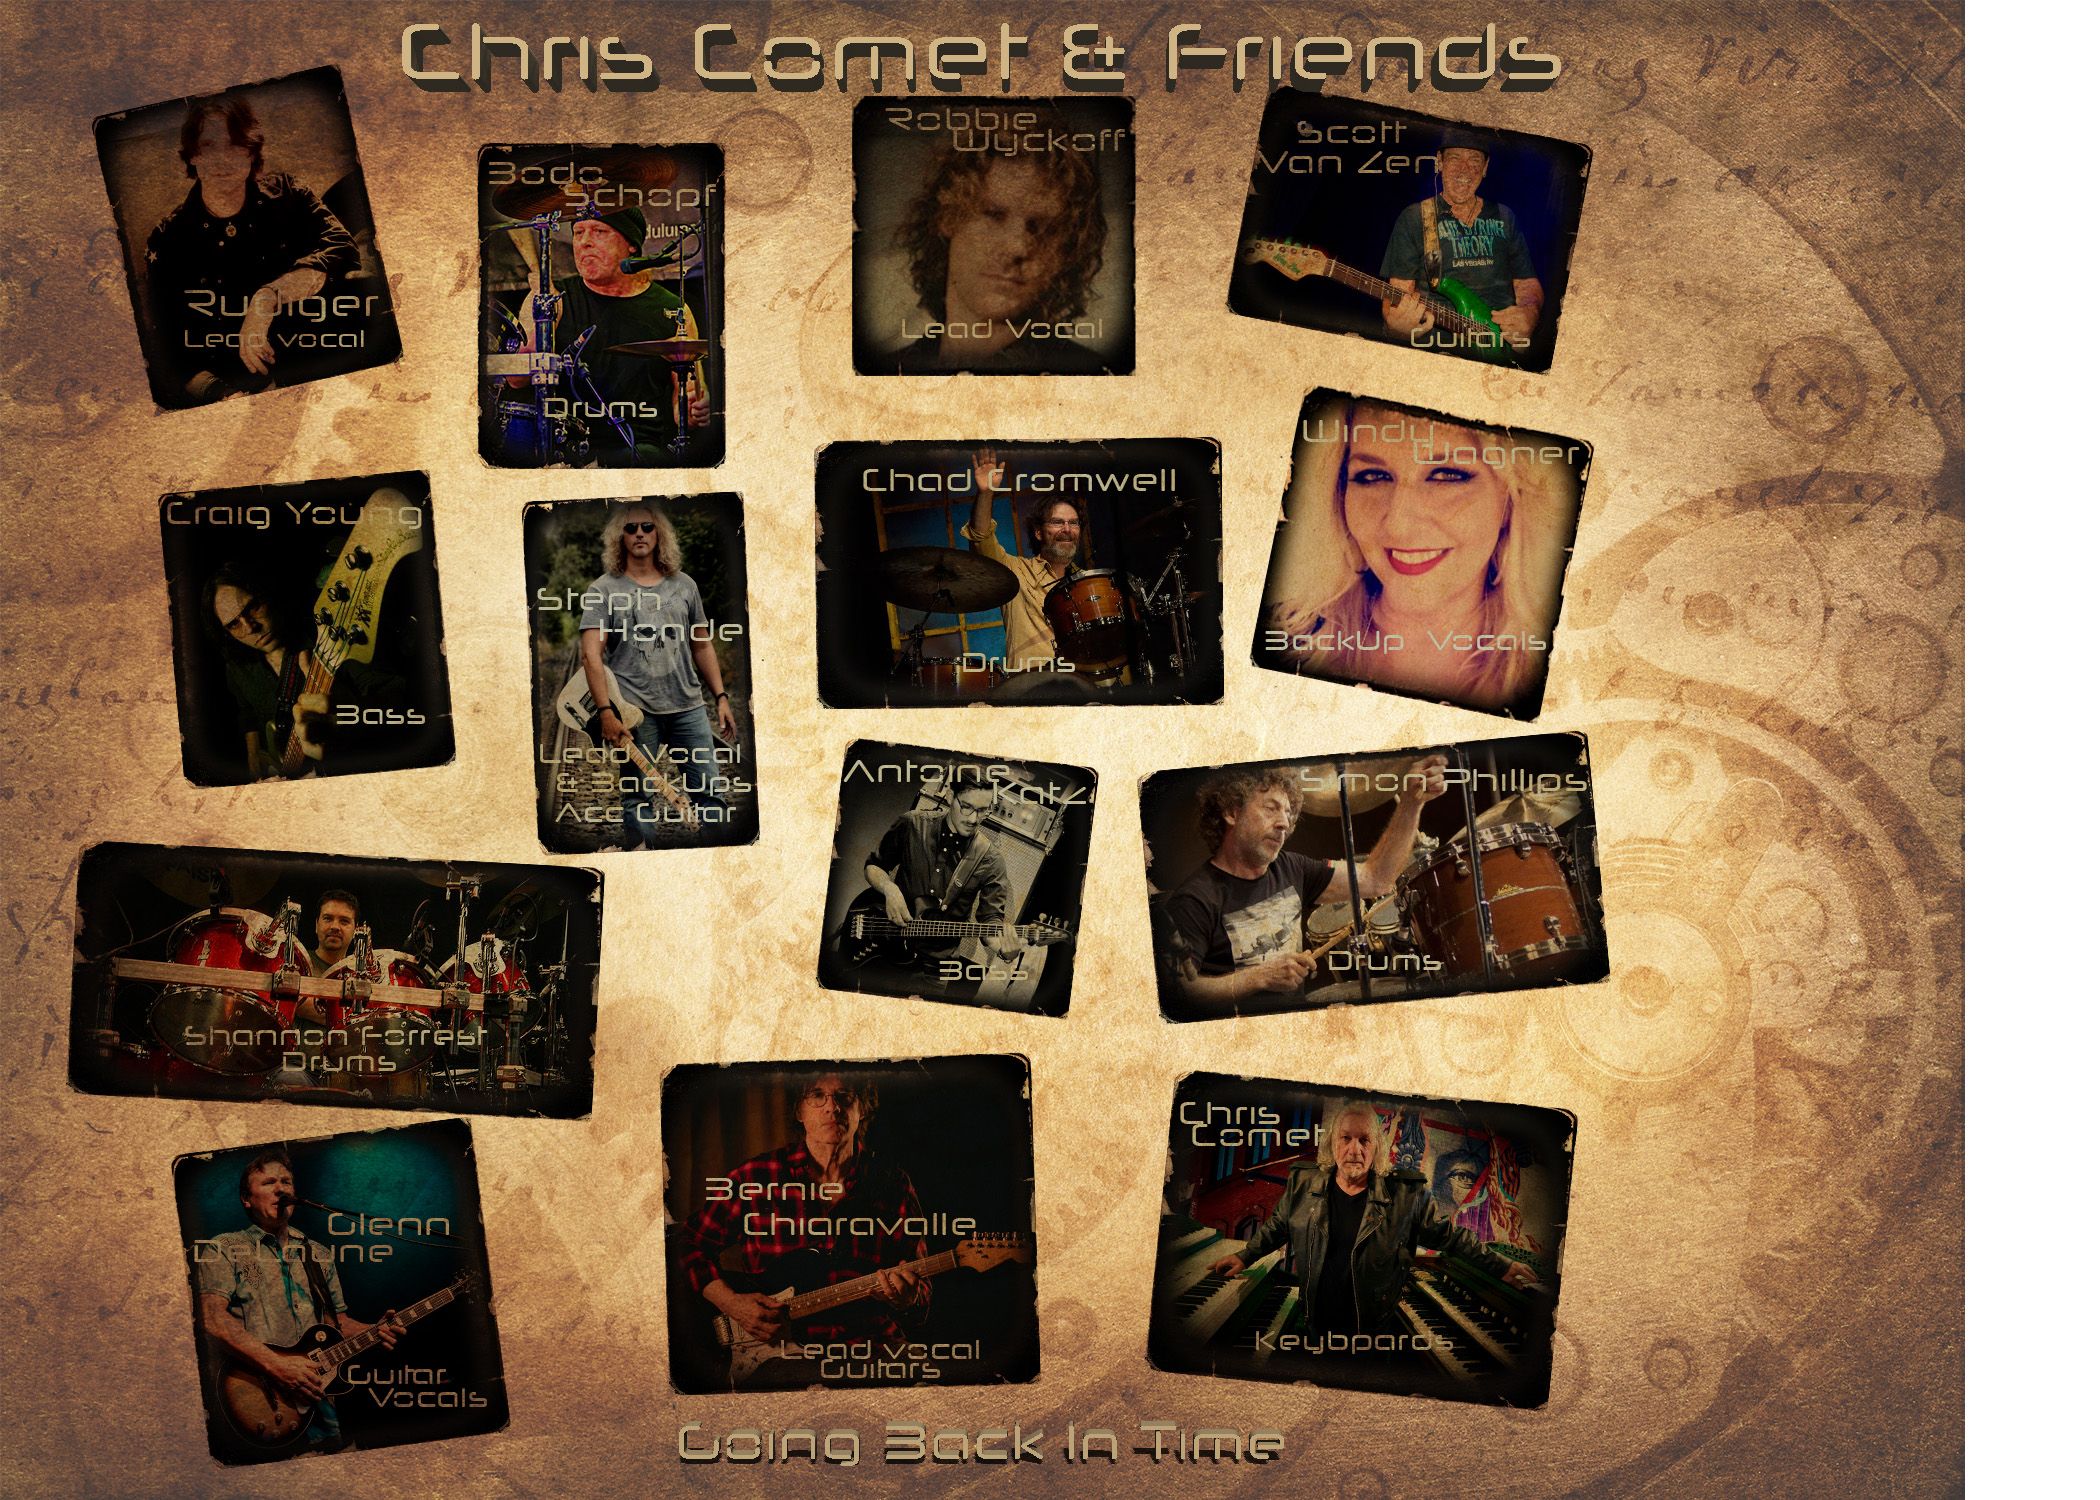 Chris Comet & Friends